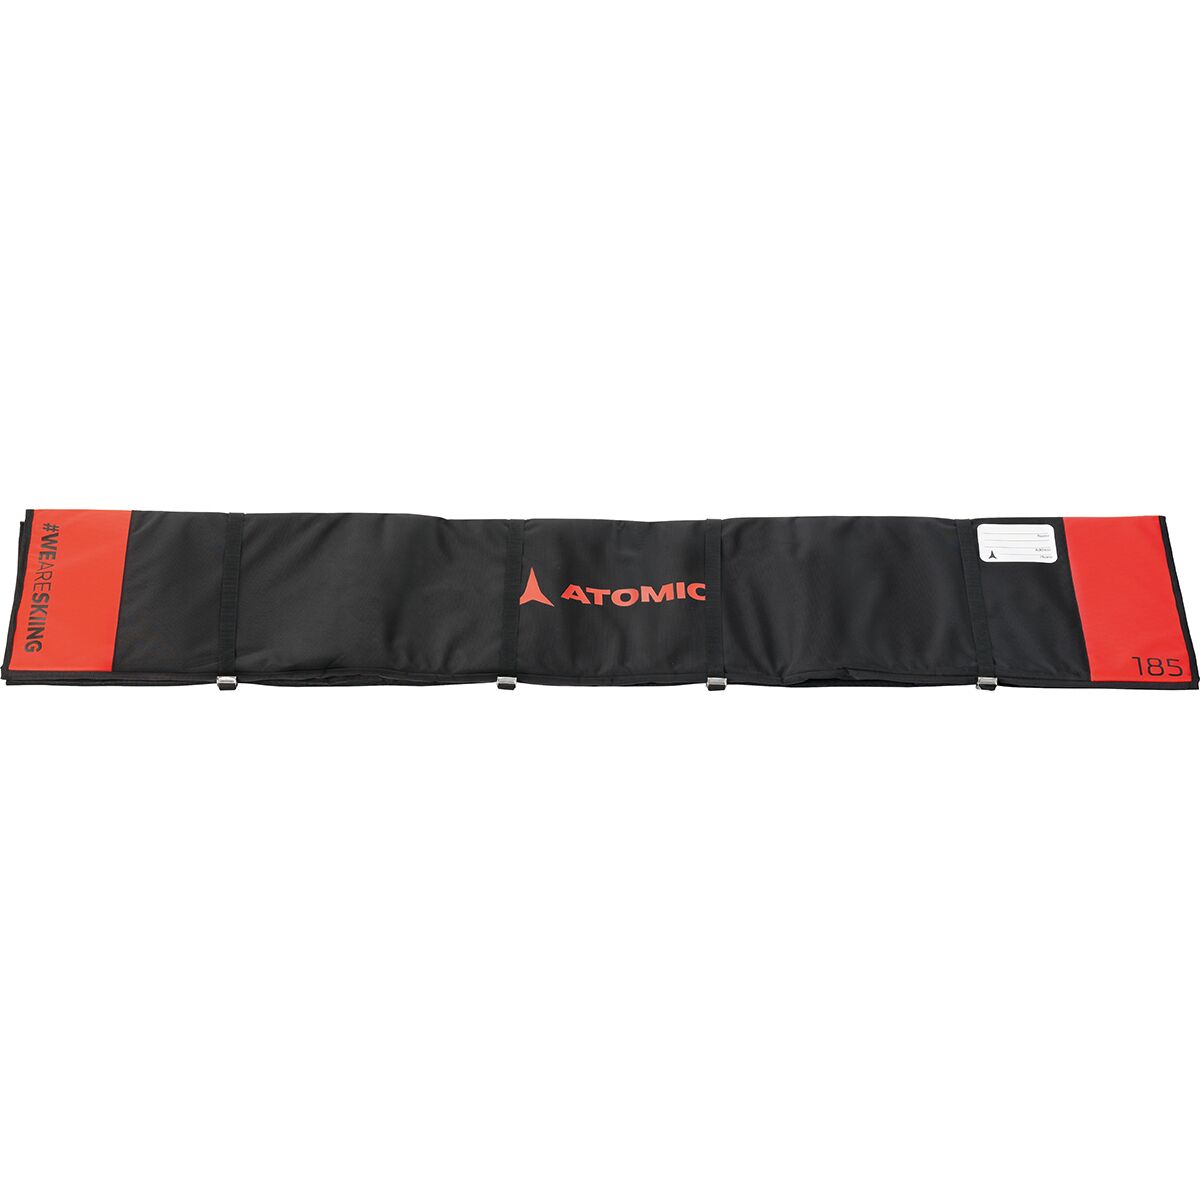 Atomic Redster 205 Fis Ski Bag - 3-Pairs